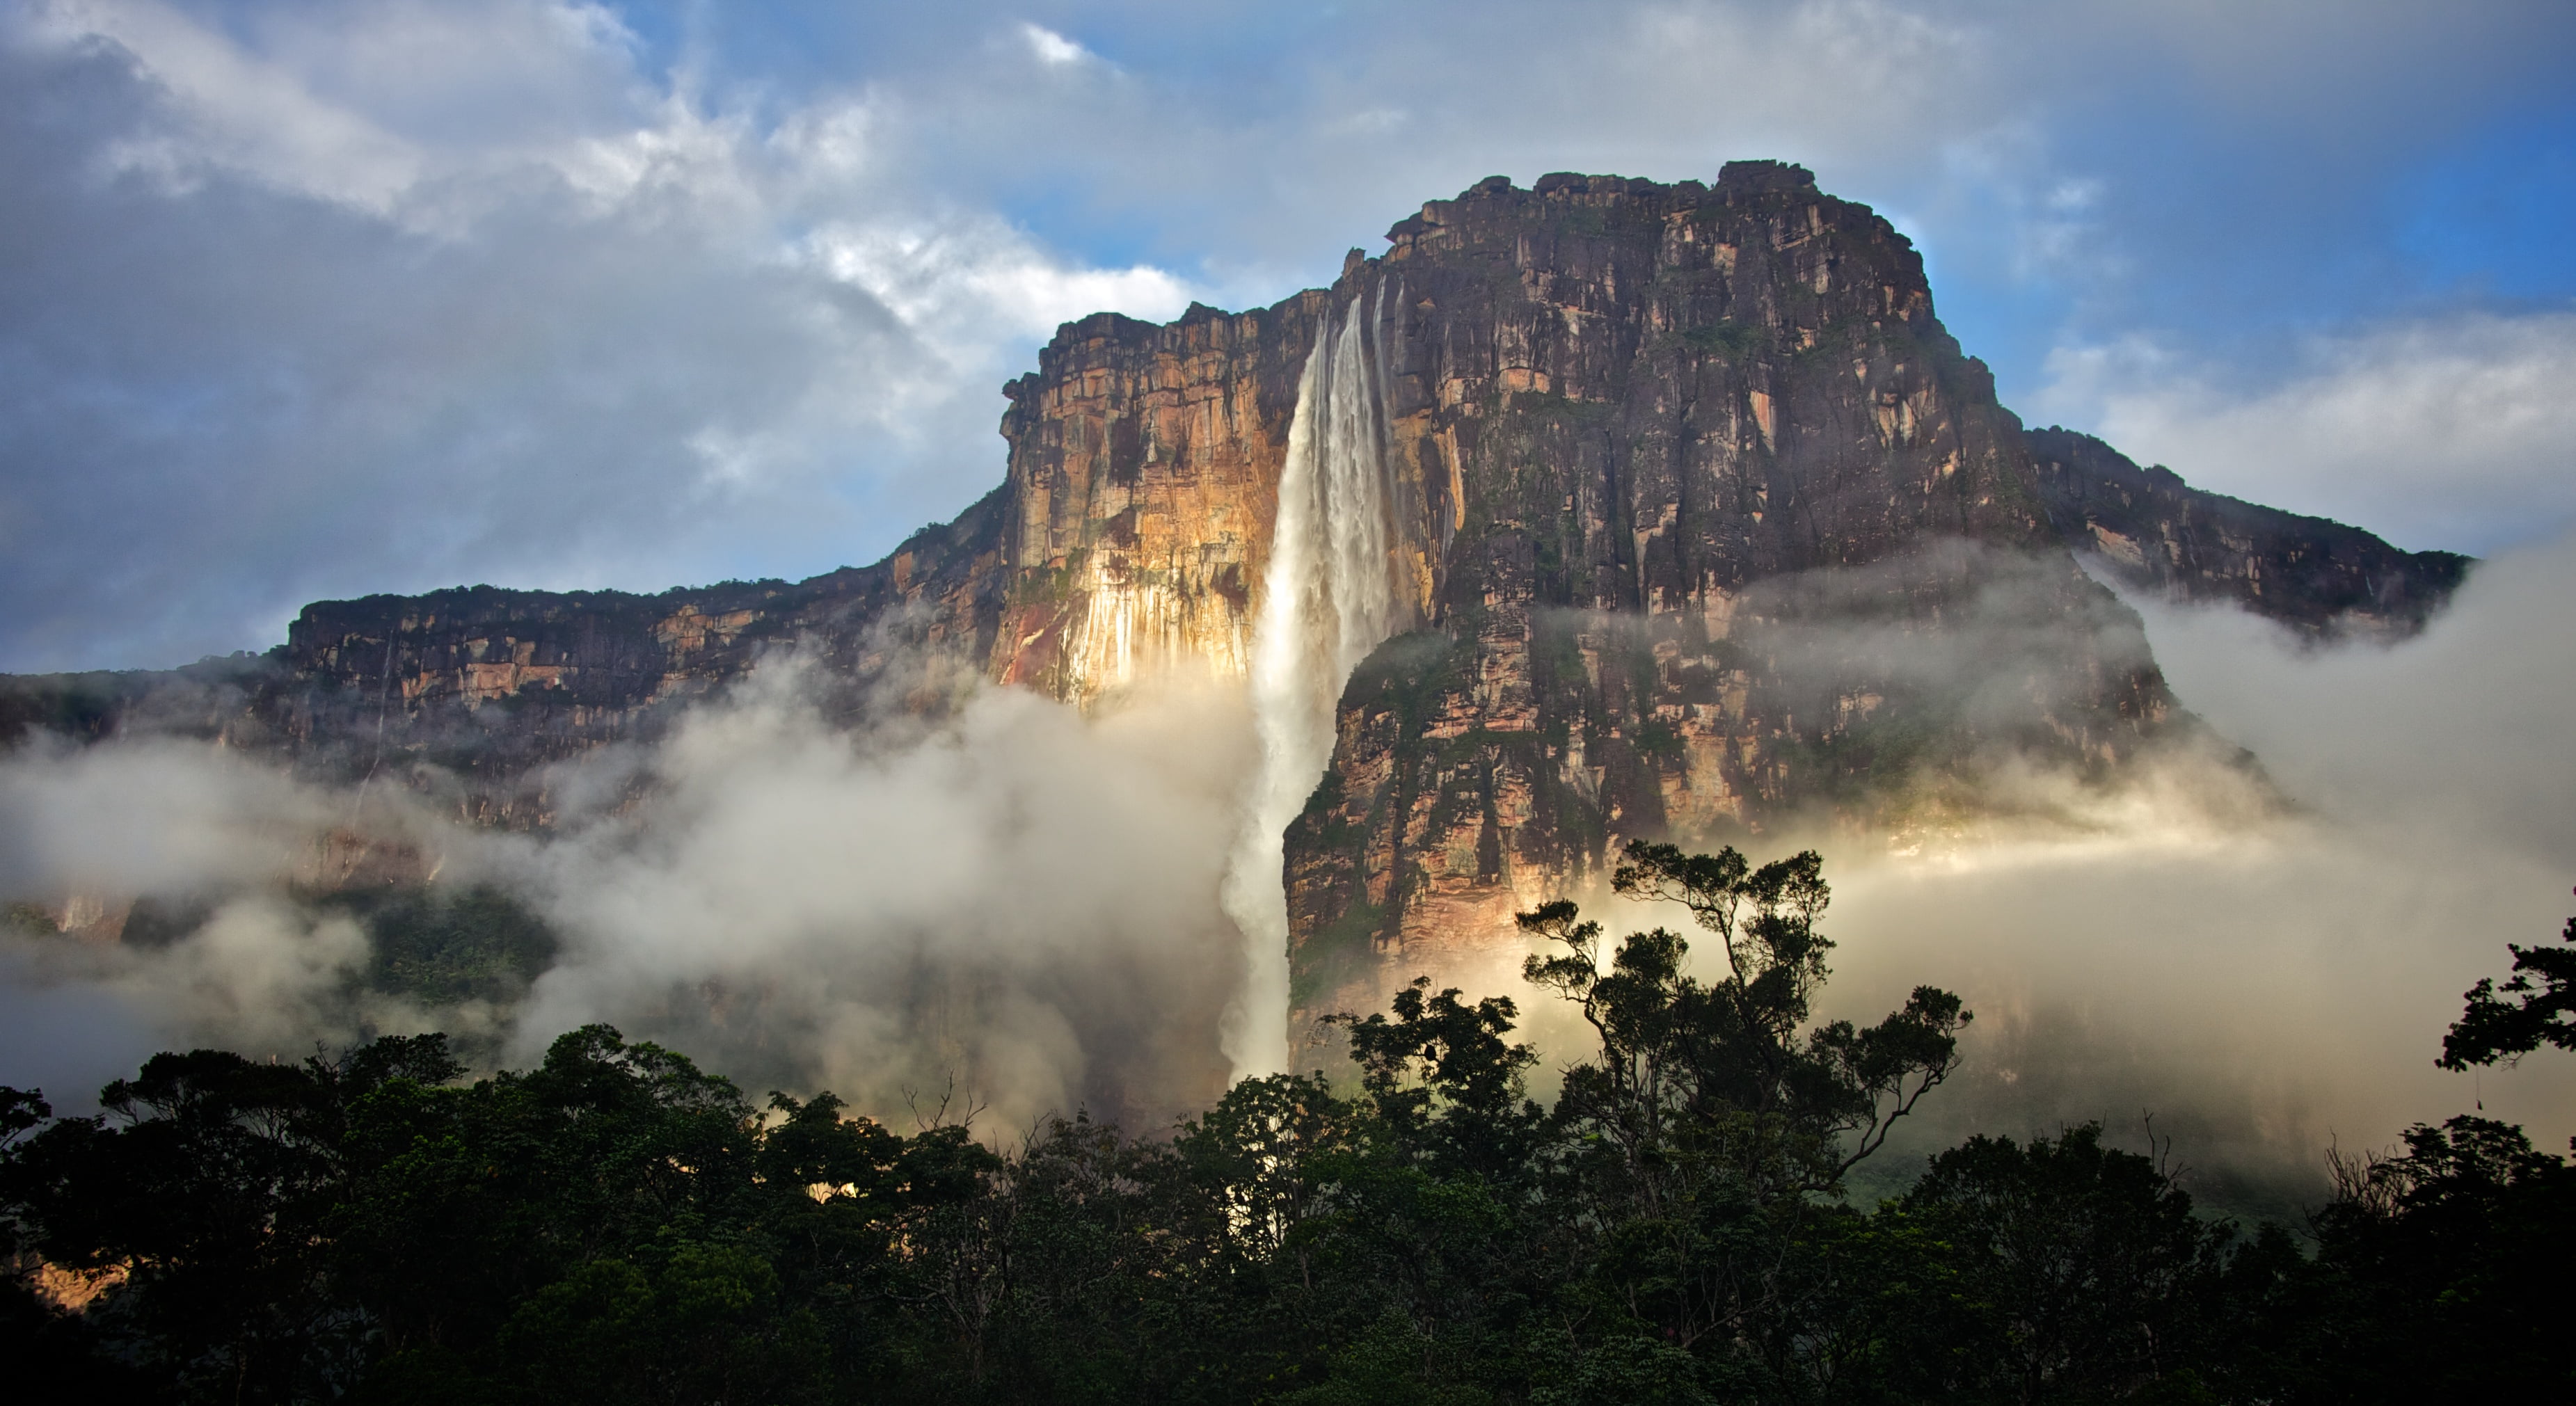 Самый высокий водопад гвианском плоскогорье. Водопад Анхель в Южной Америке. Южная Америка Гвианское плоскогорье. Гвианское плоскогорье Анхель. Венесуэльский водопад Анхель.